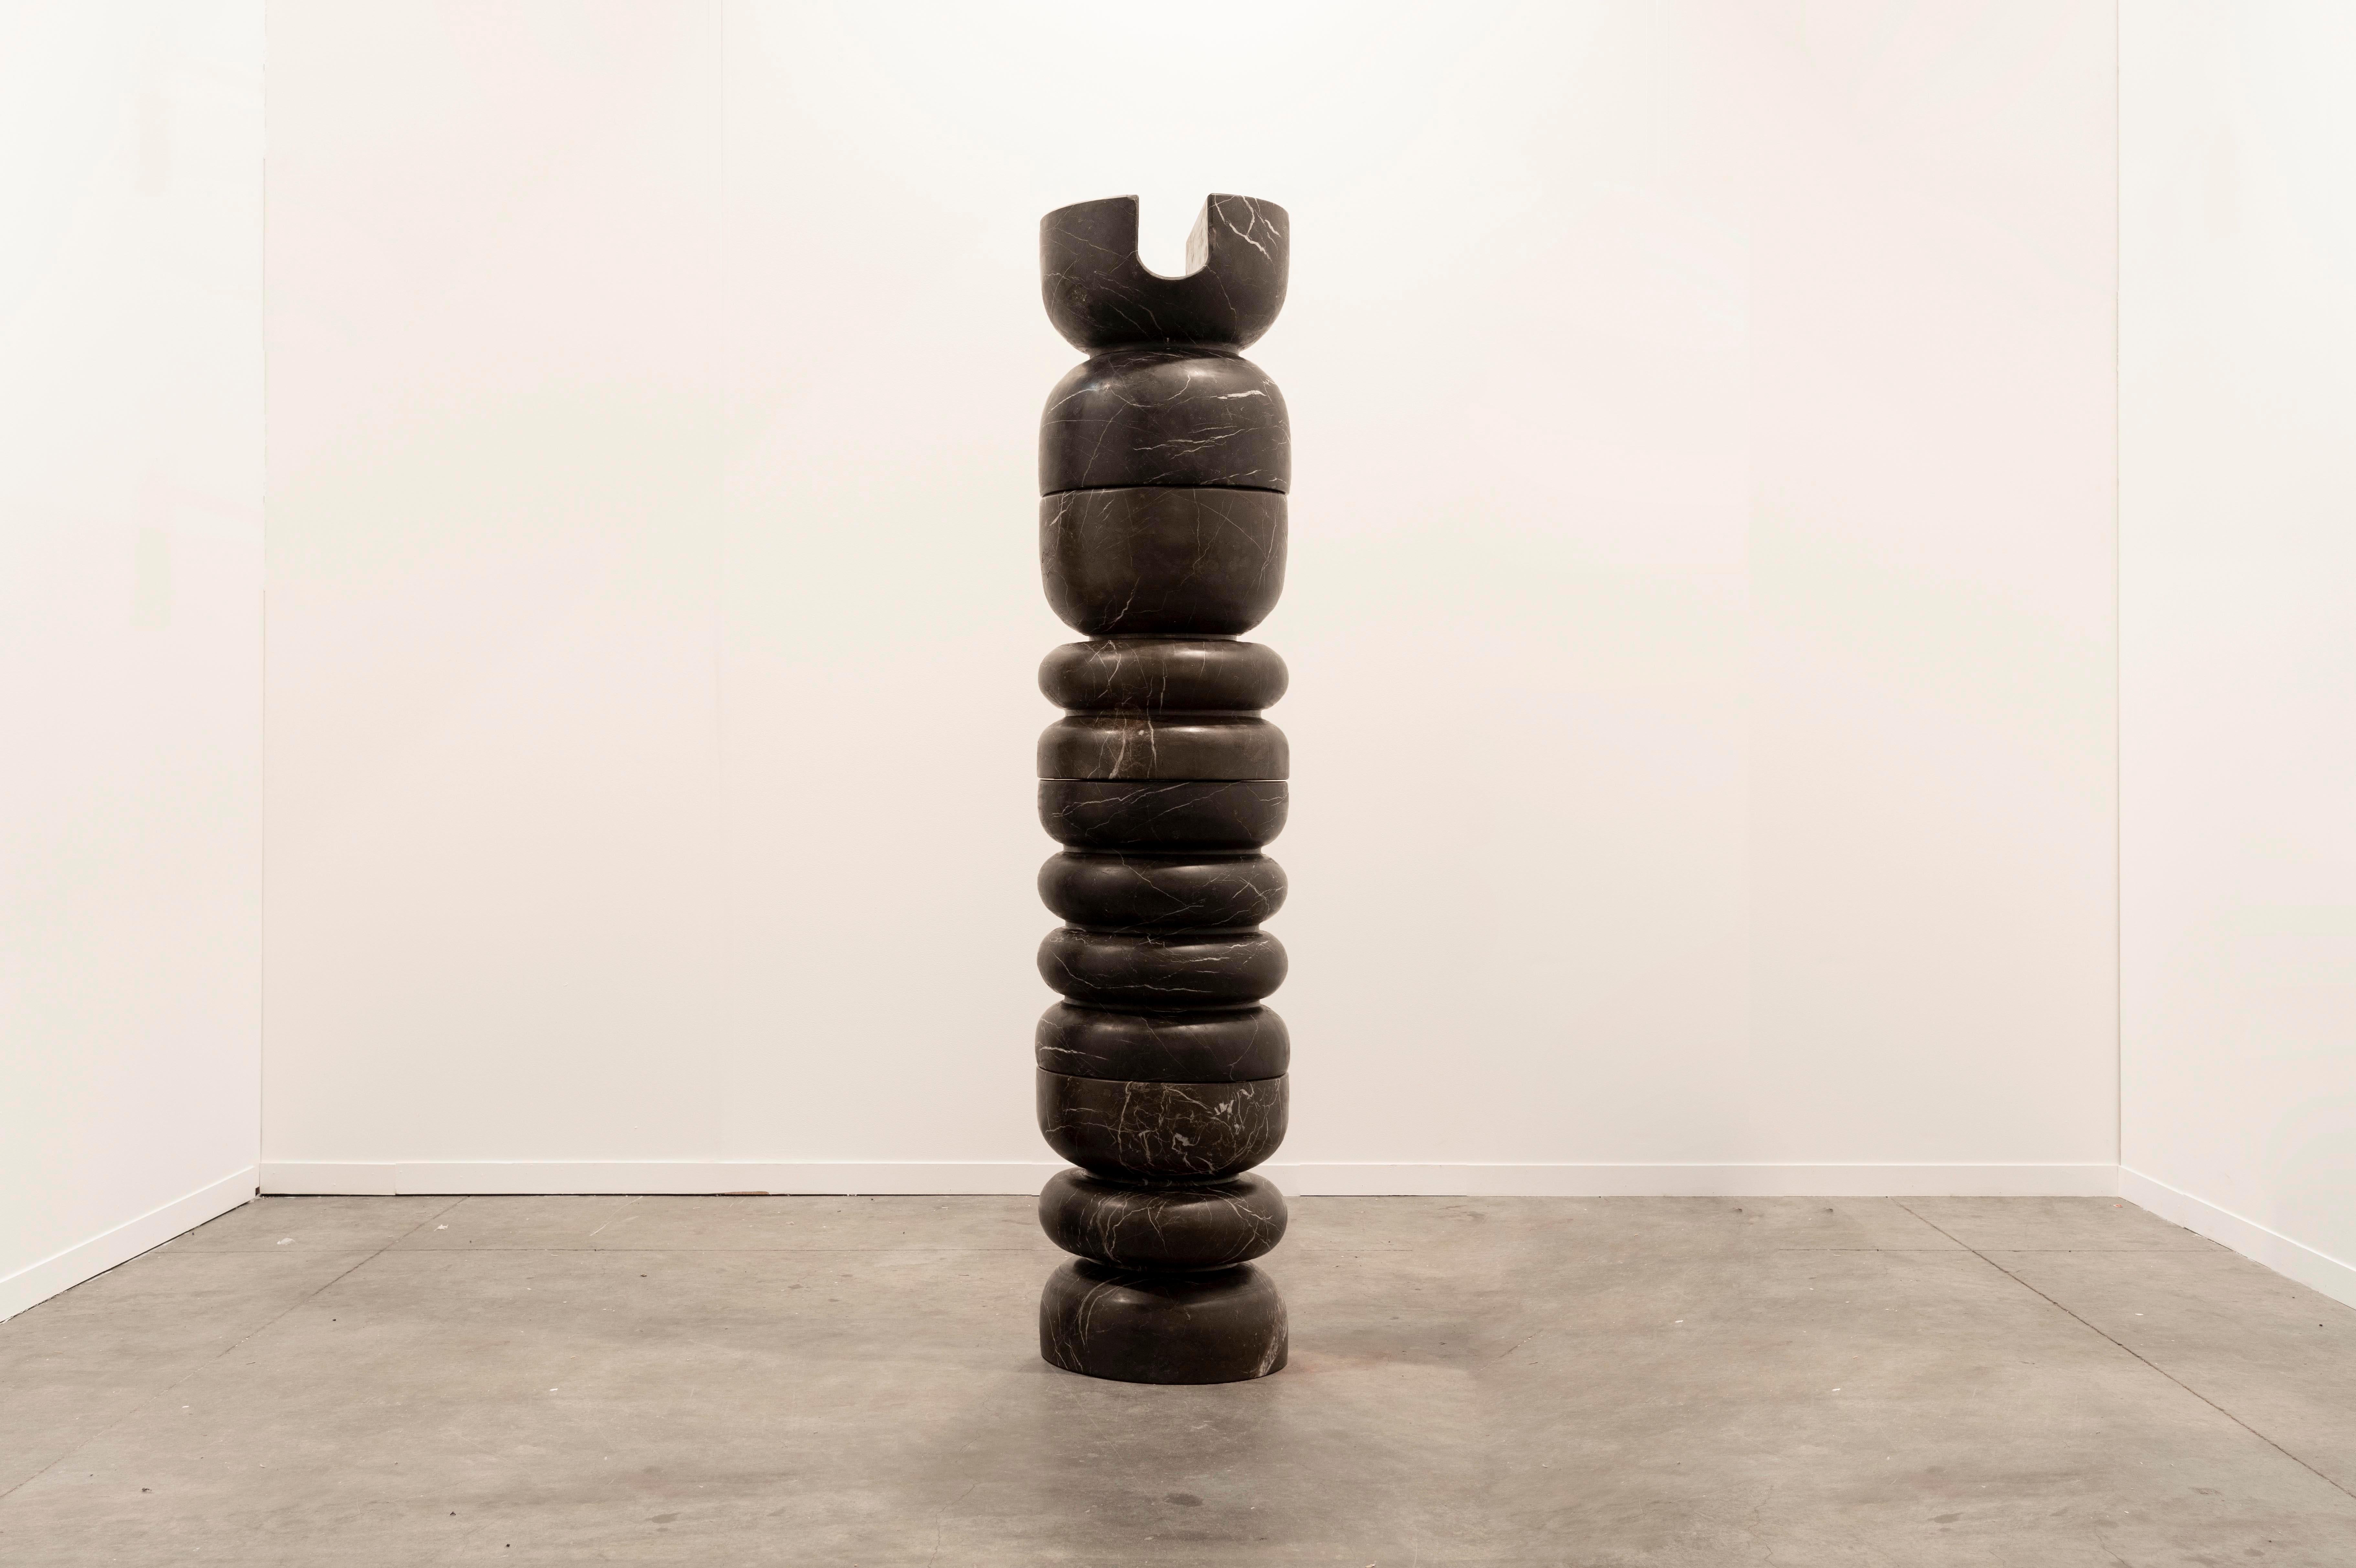 I. A PROPOS DE REBECA CORS
Rebeca CORS (Mexique, 1988). 
Son travail oscille entre la sculpture et l'objet utilitaire, étudiant les limites et les points de rencontre entre ces deux concepts. L'intention de son travail est de remettre en question